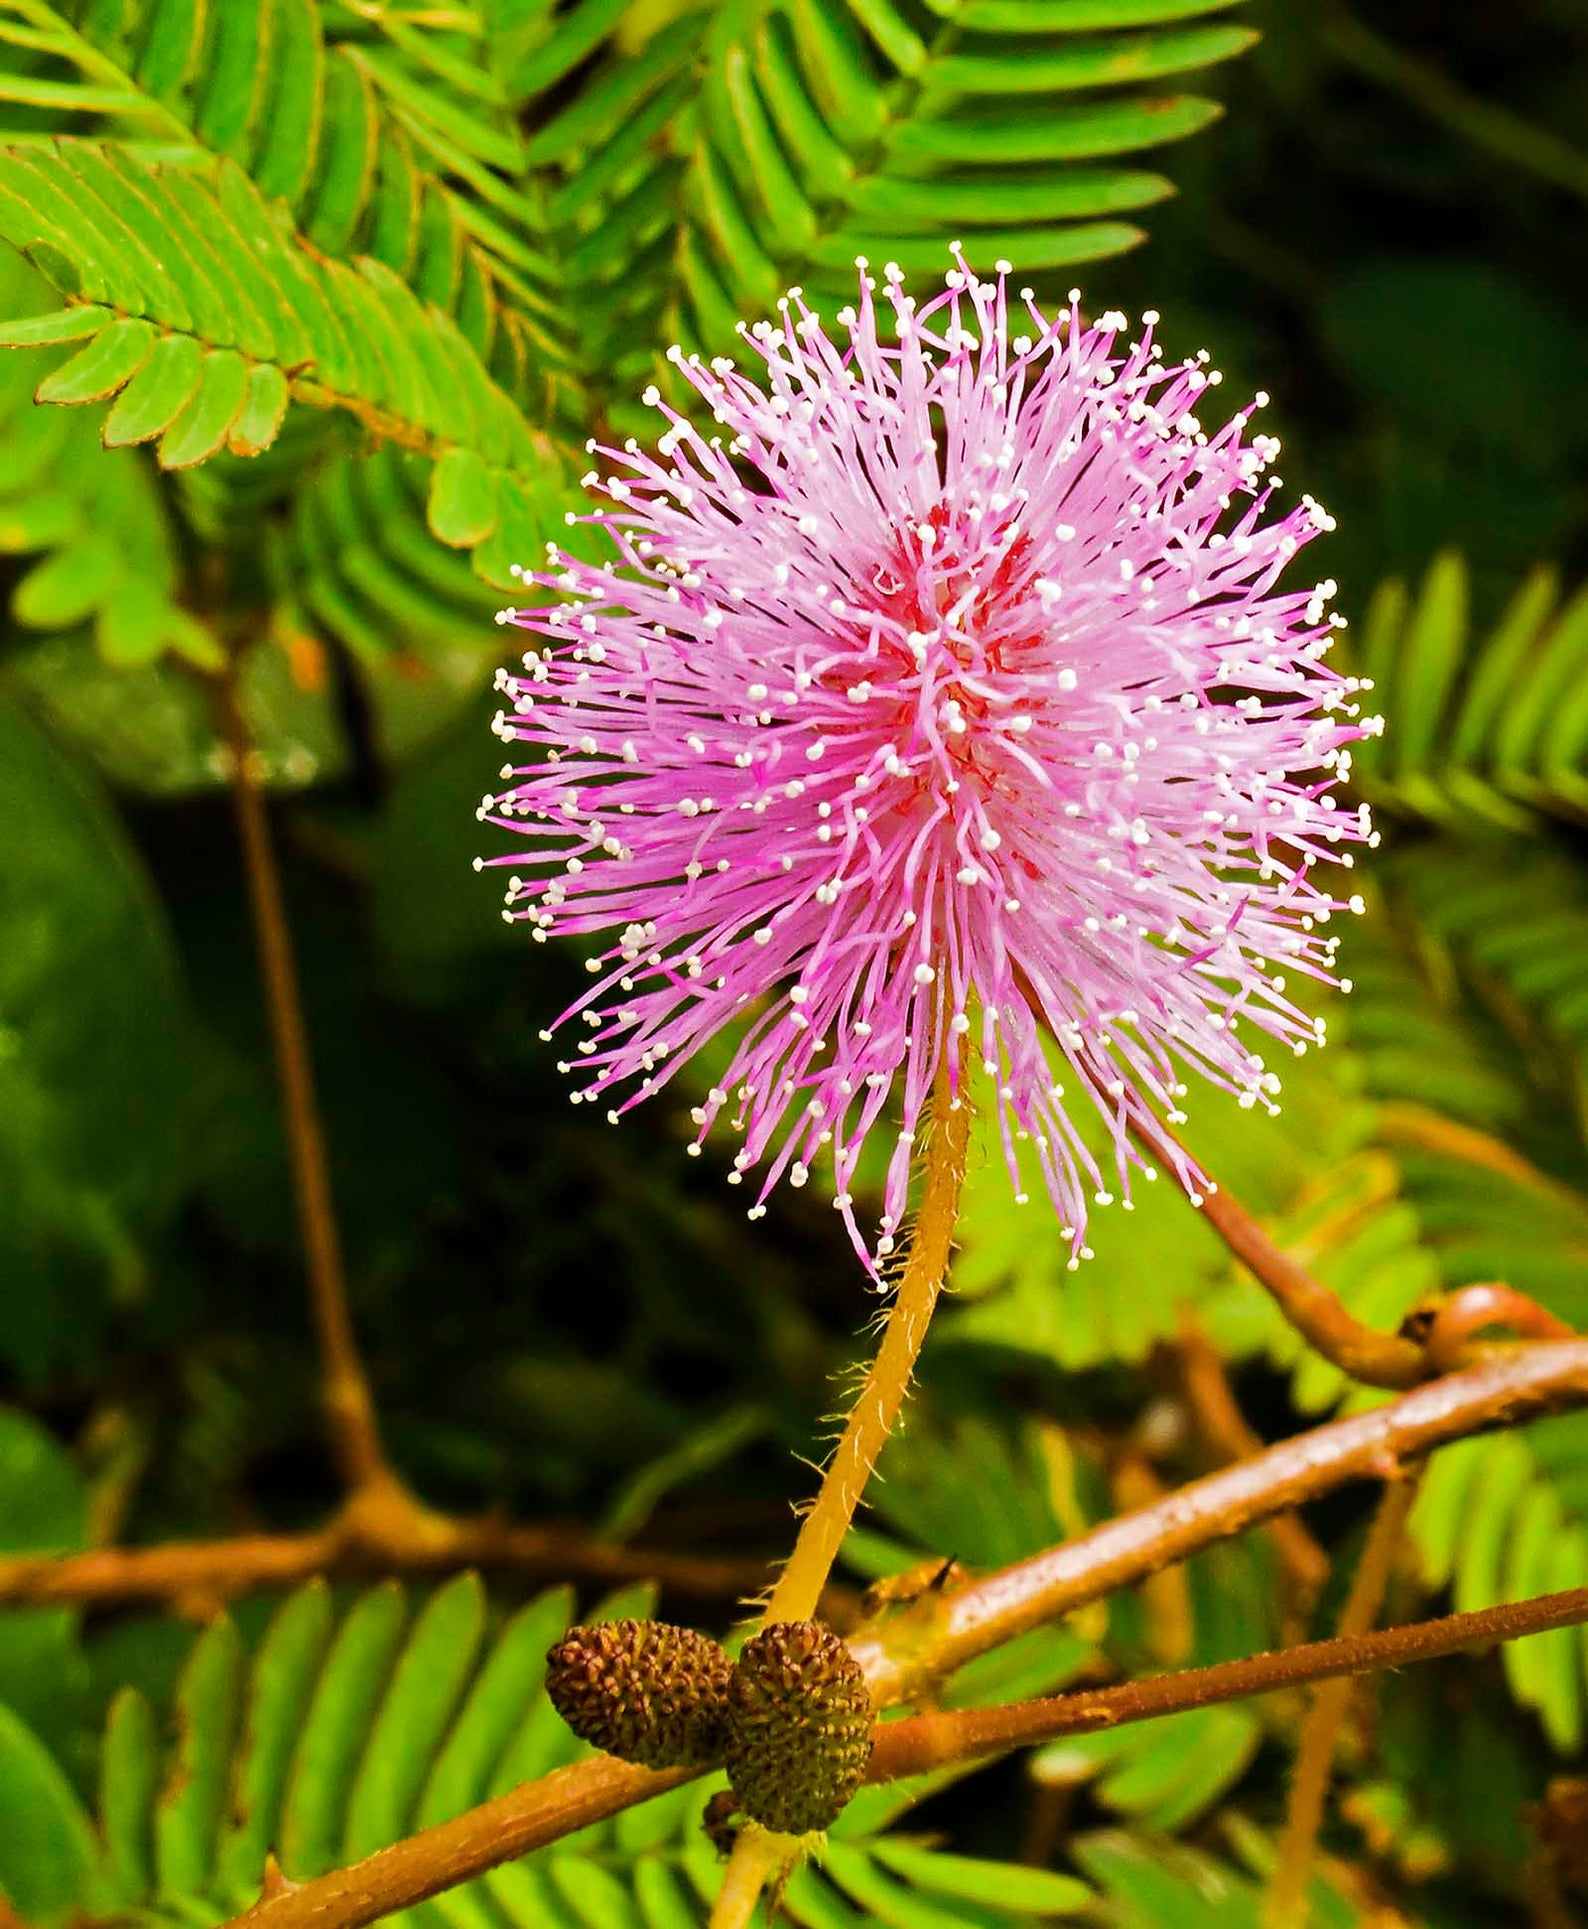 Folhas verdes da planta sensível, planta sonolenta (mimosa pudica) no fundo  verde e roxo, mostrando o significado de tímido